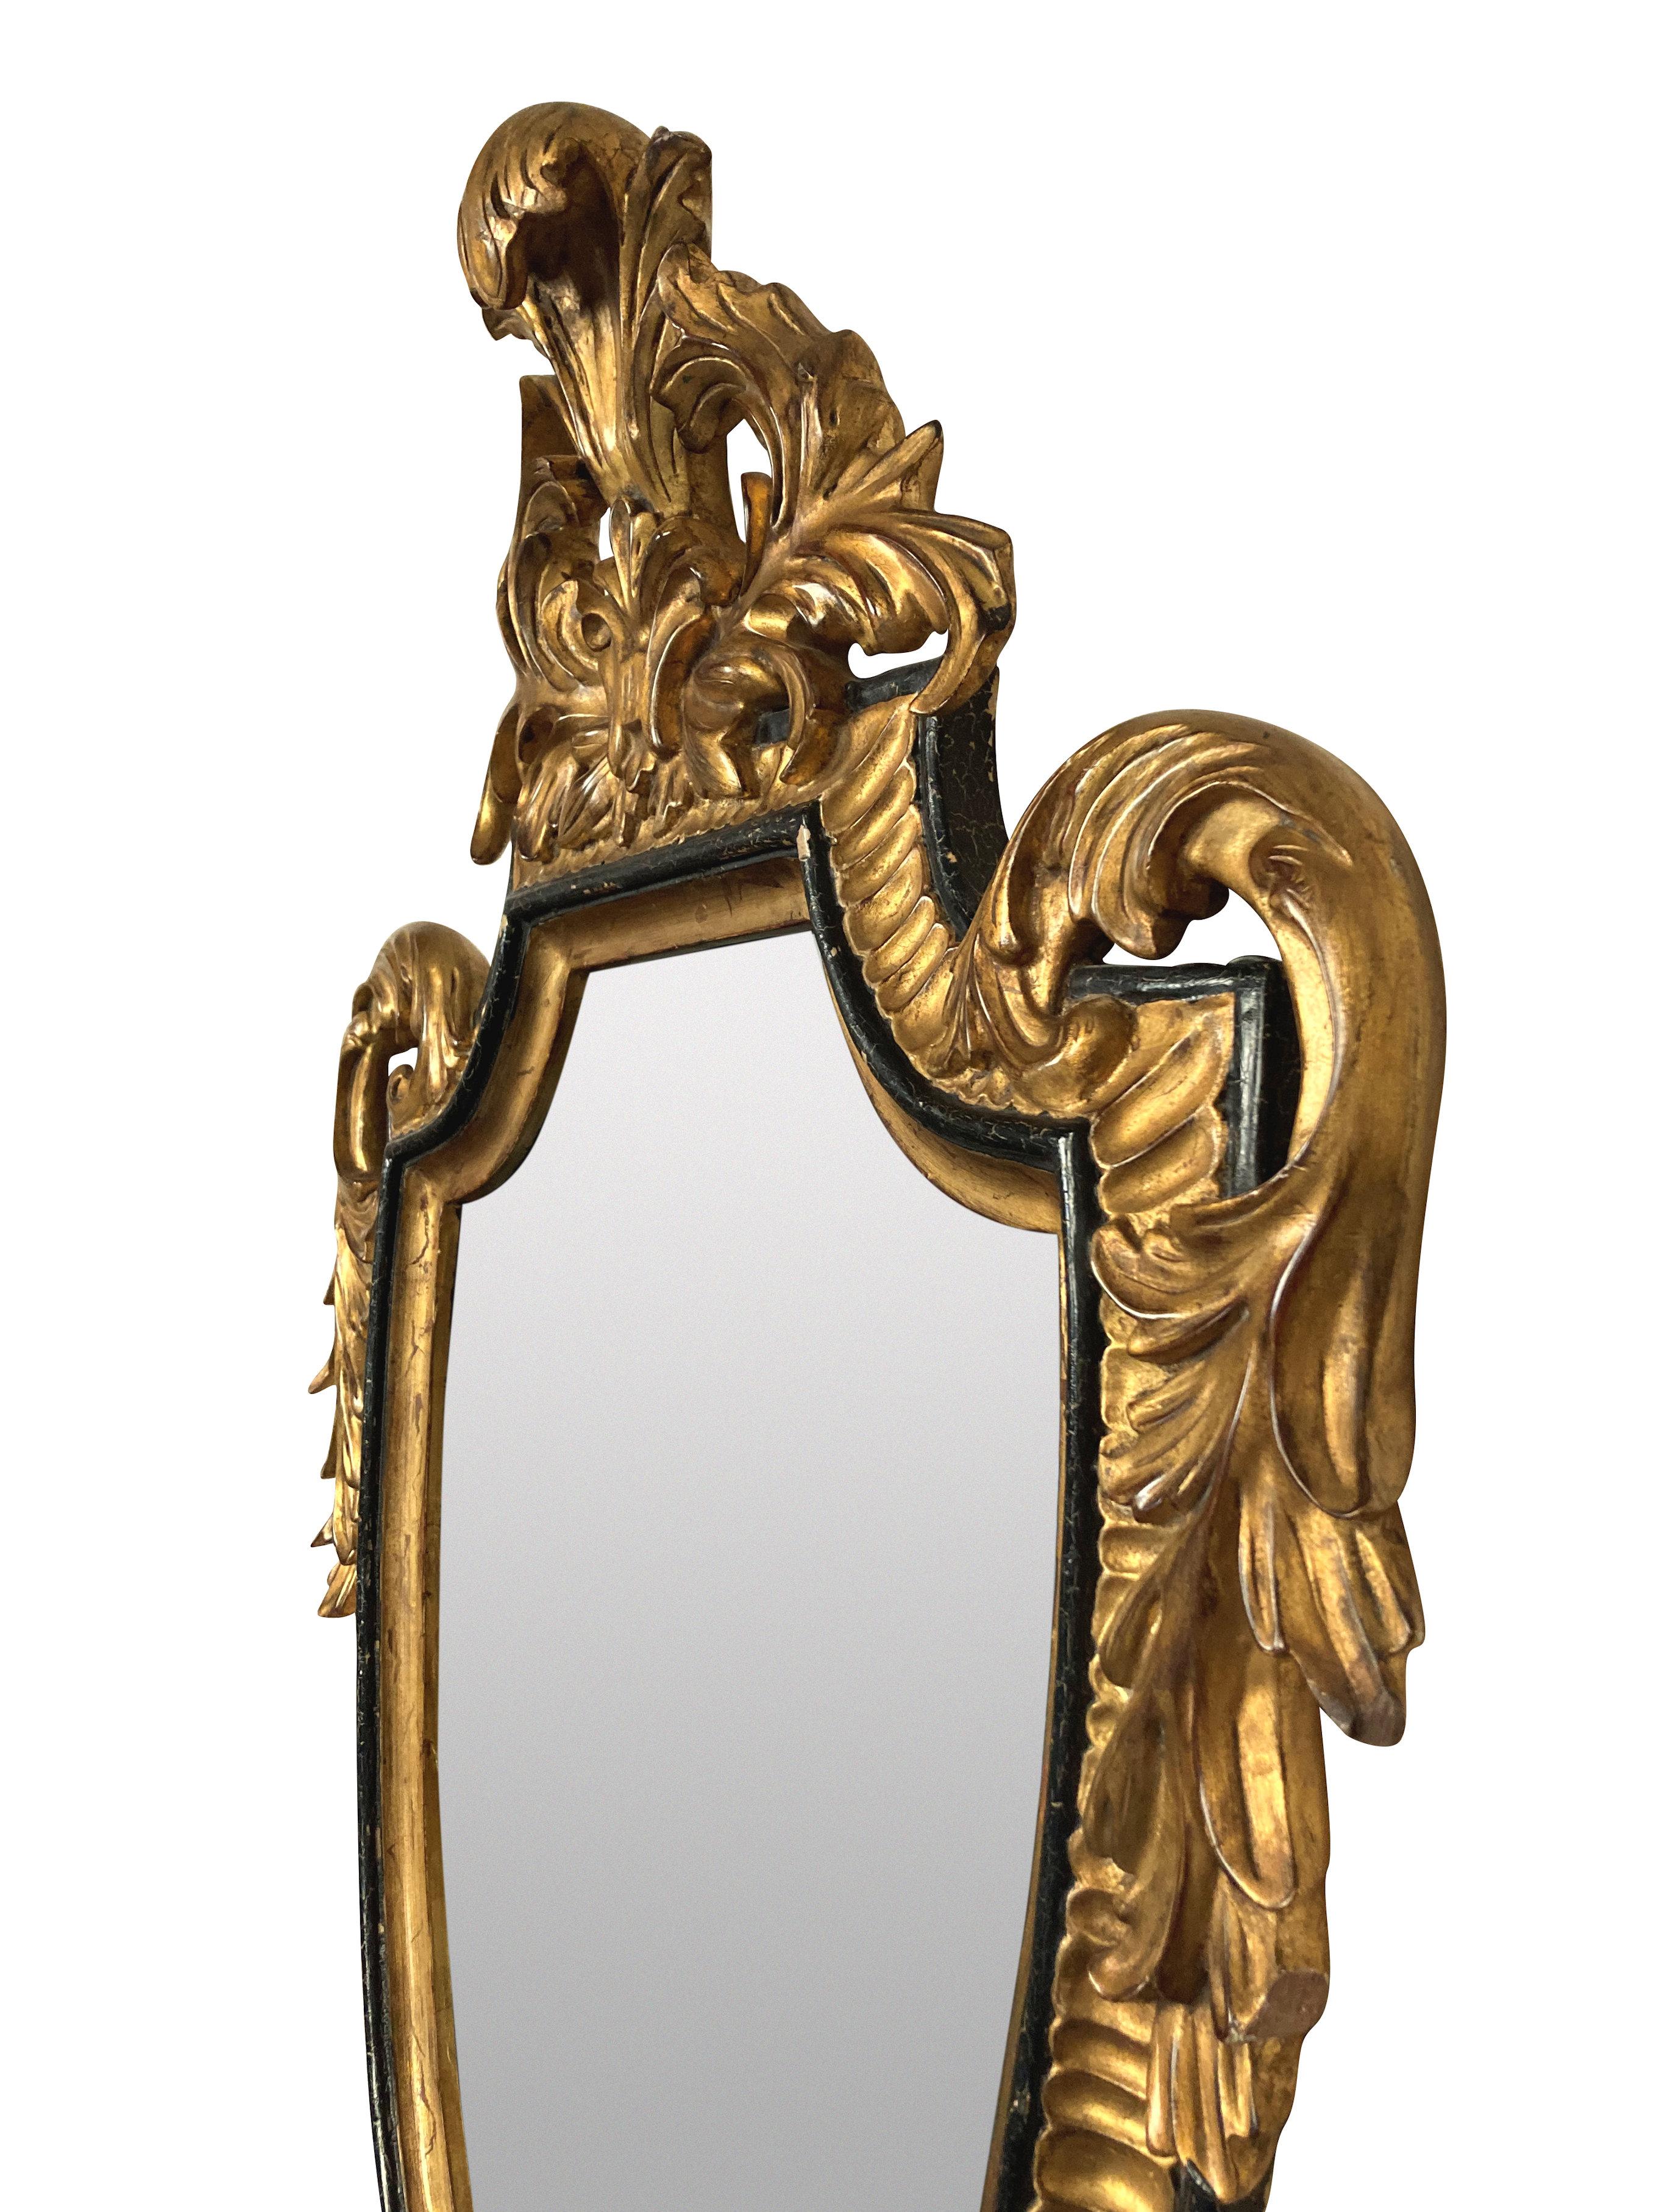 Ein amerikanischer Spiegel im Stil Louis XV aus geschnitztem, vergoldetem Holz und Ebenholz von The Dauphine Mirror Co, West Palm Beach.

